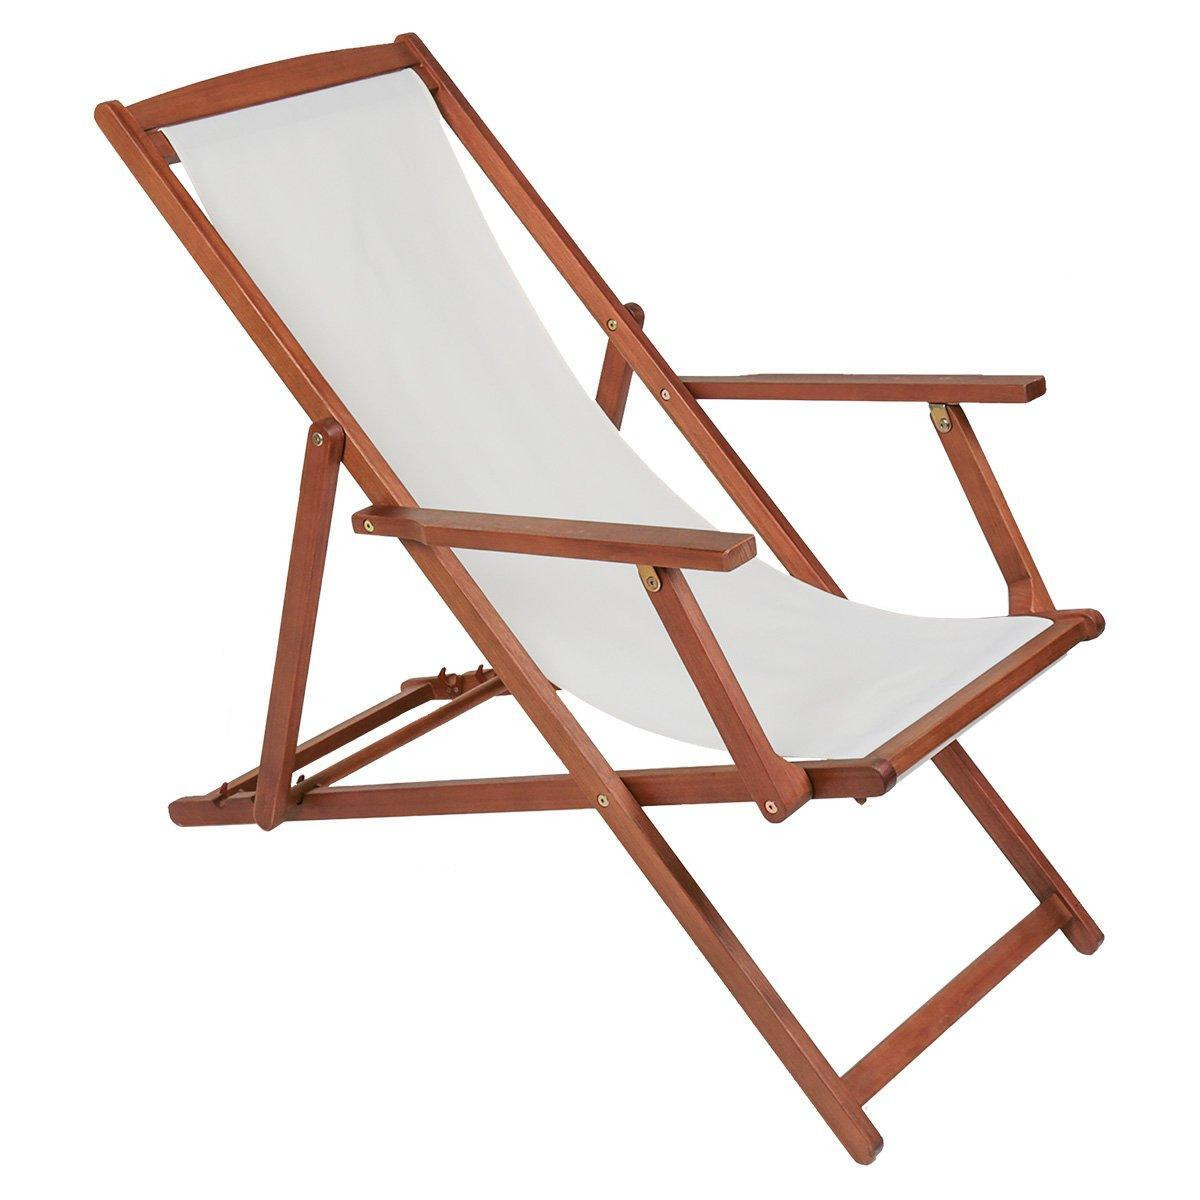 Folding Eucalyptus Wooden Deck Chair Beach Sun Lounger - image 1